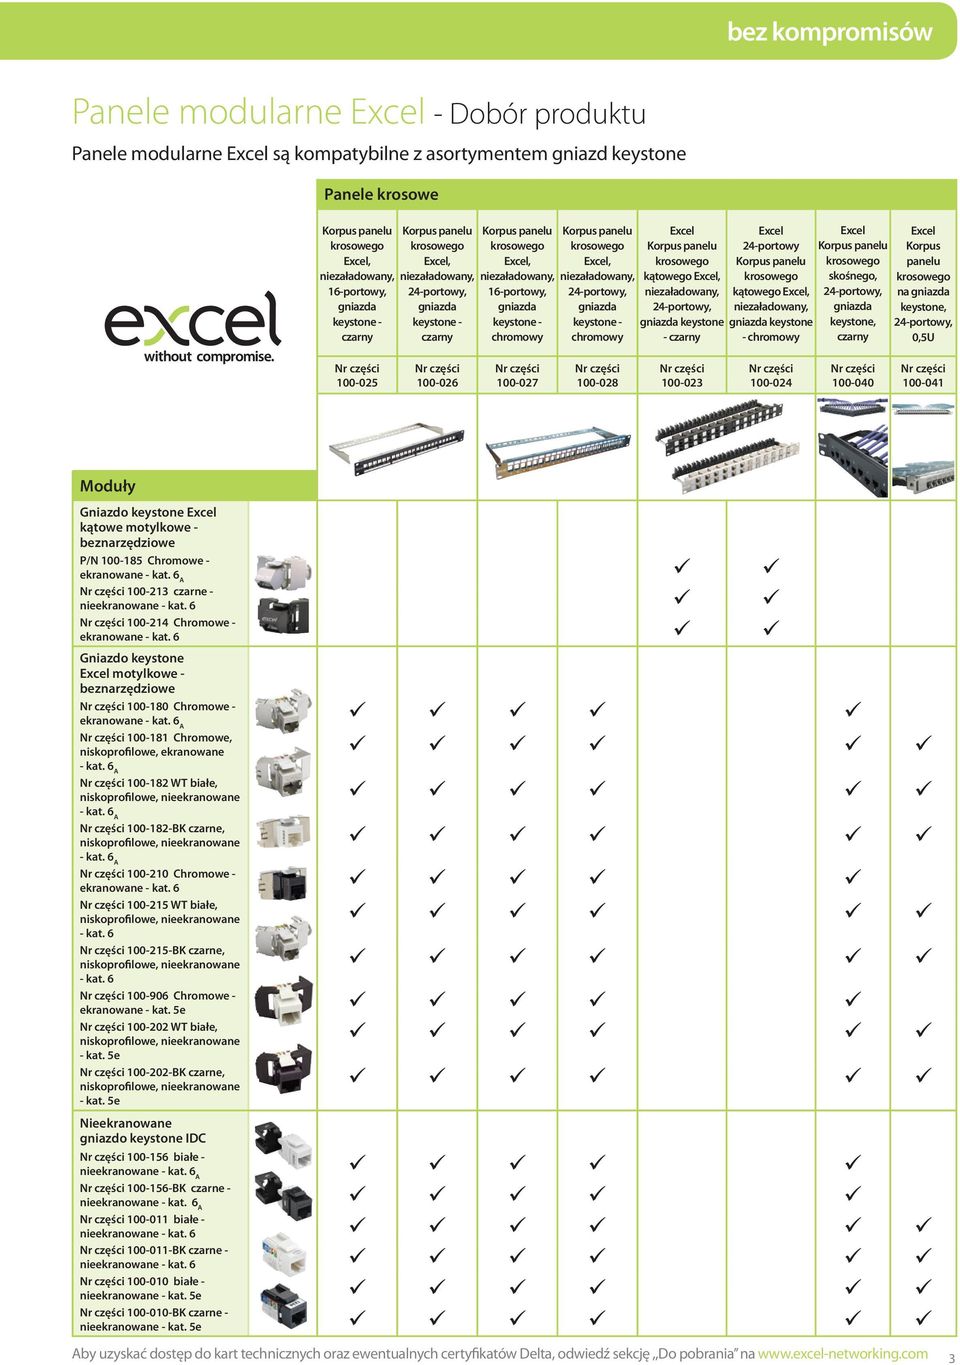 Korpus panelu krosowego Excel, niezaładowany, 24-portowy, gniazda keystone - chromowy Excel Korpus panelu krosowego kątowego Excel, niezaładowany, 24-portowy, gniazda keystone - czarny Excel